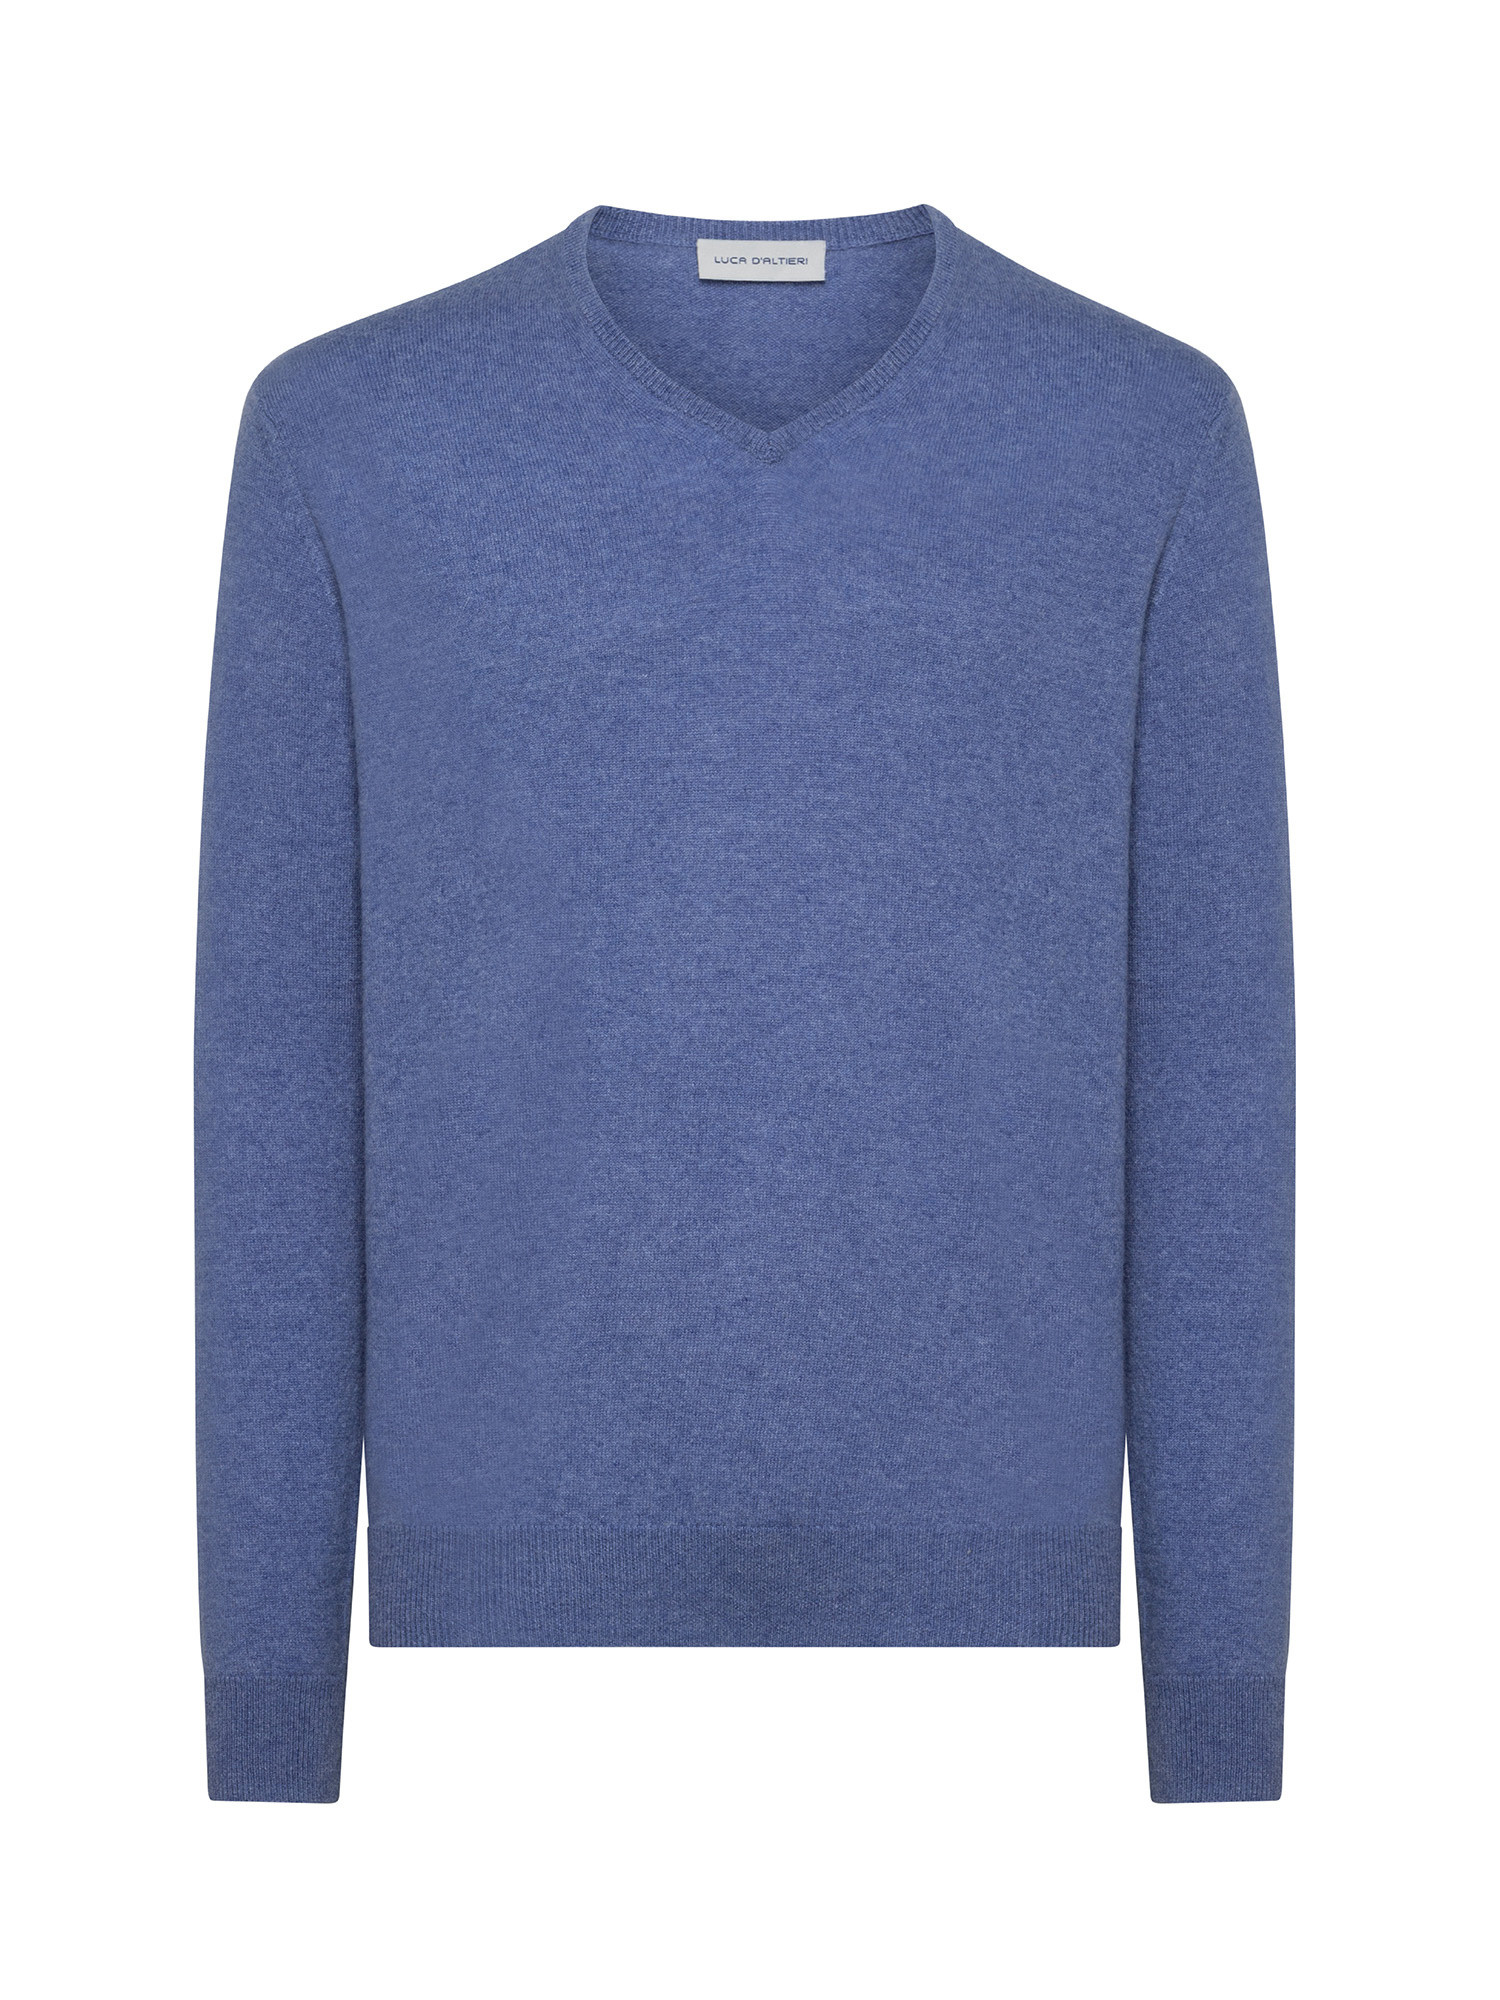 Пуловер с V-образным вырезом из чистого кашемира Luca D'Altieri, бледно-голубой